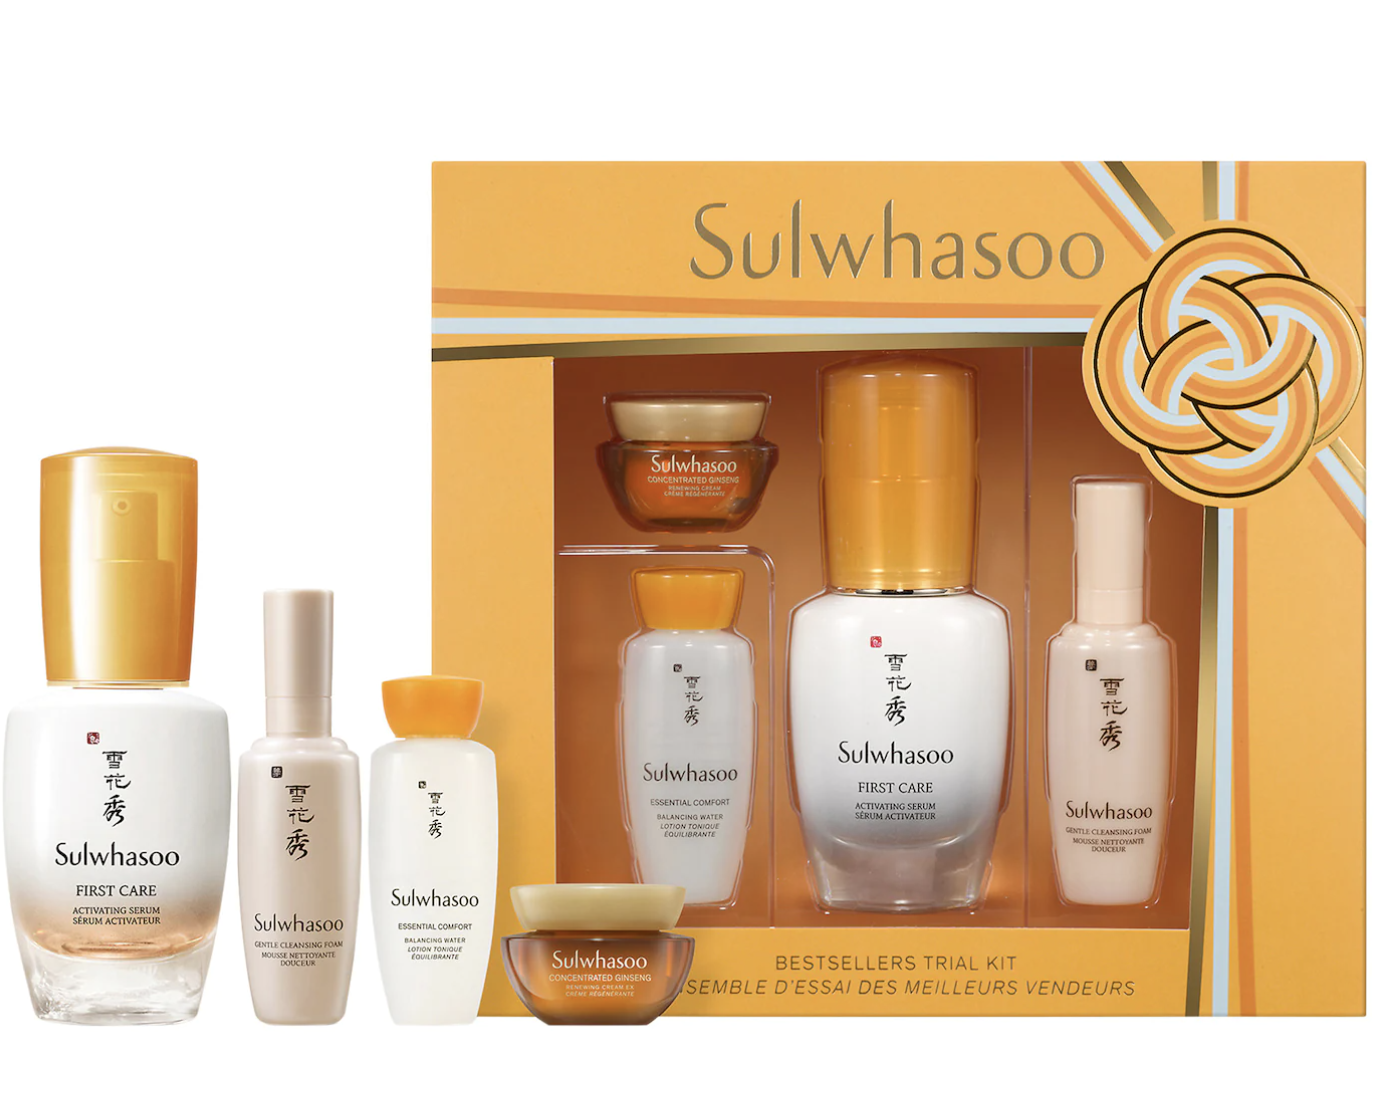 Sulwhasoo Bestsellers Trial Kit